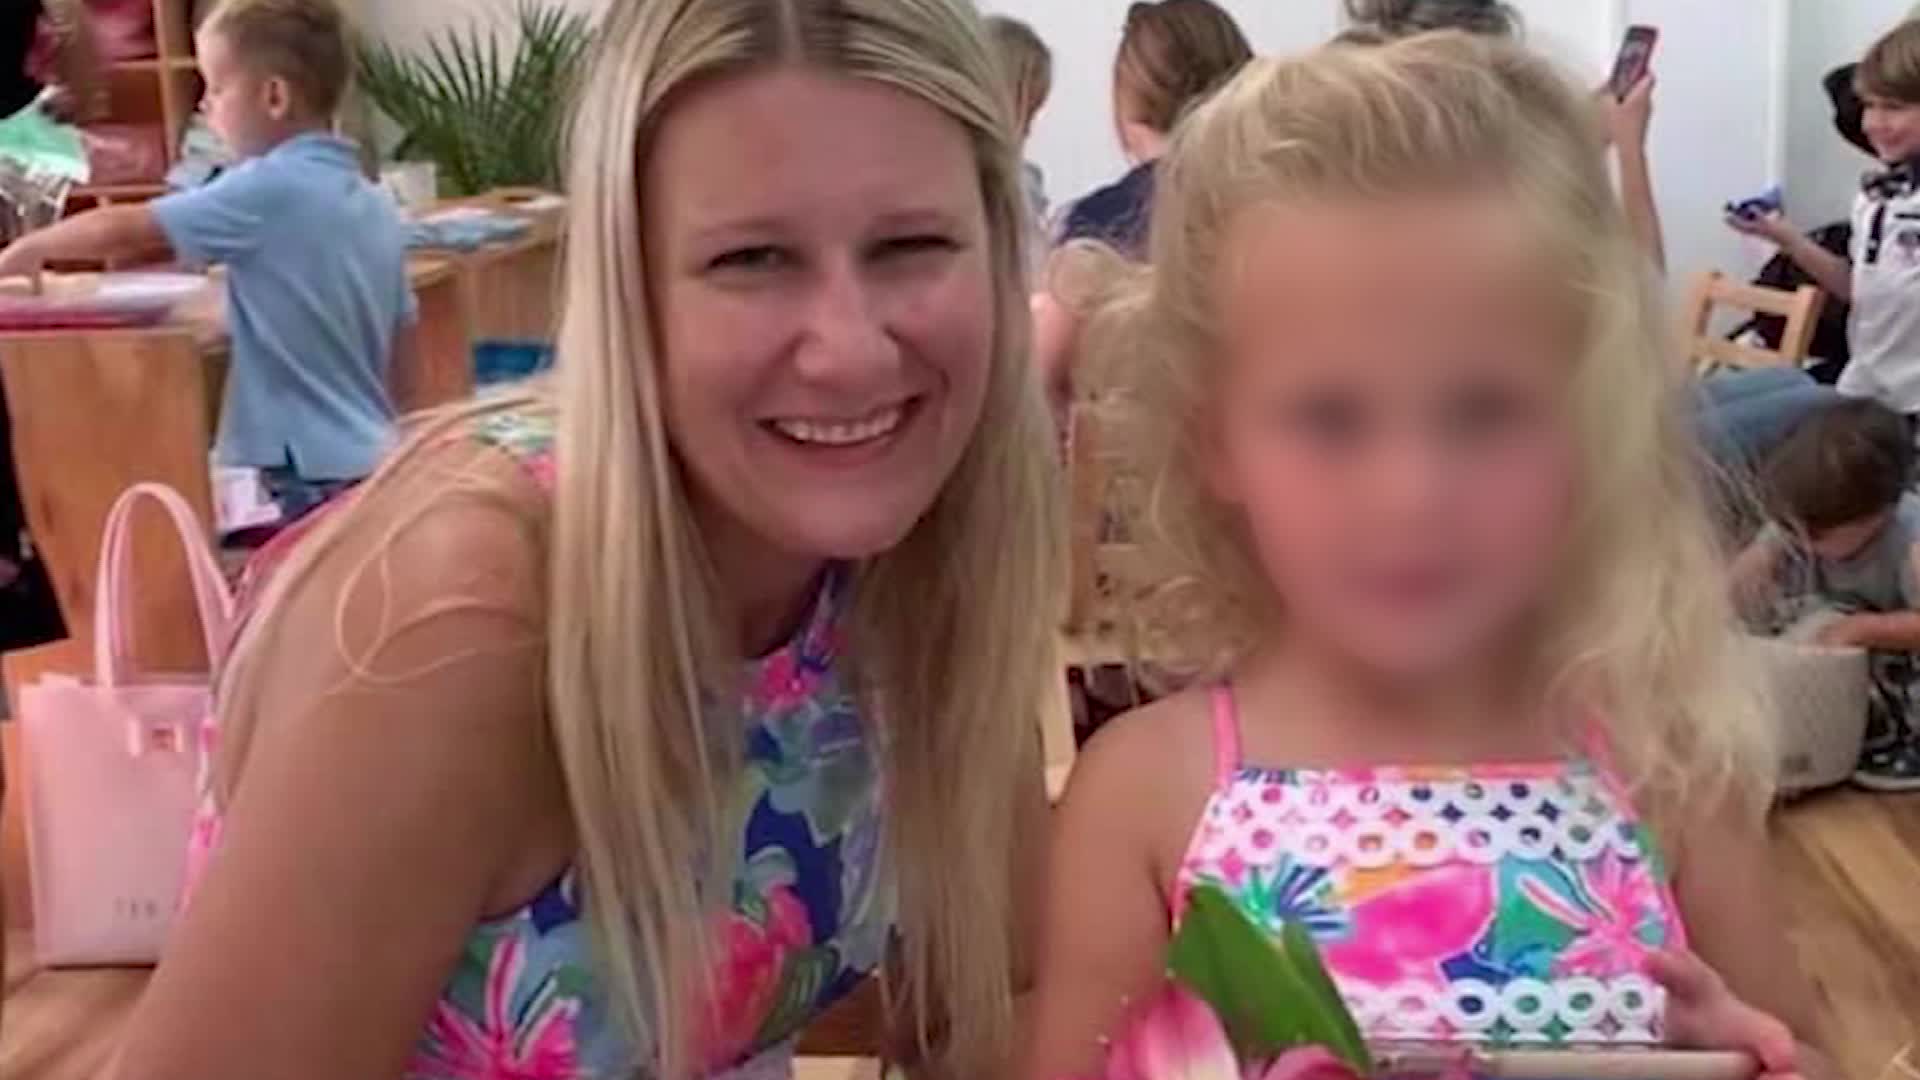 طبيبة طوارئ تخسر حضانة طفلتها بحكم قضائي بسبب فيروس كورونا 